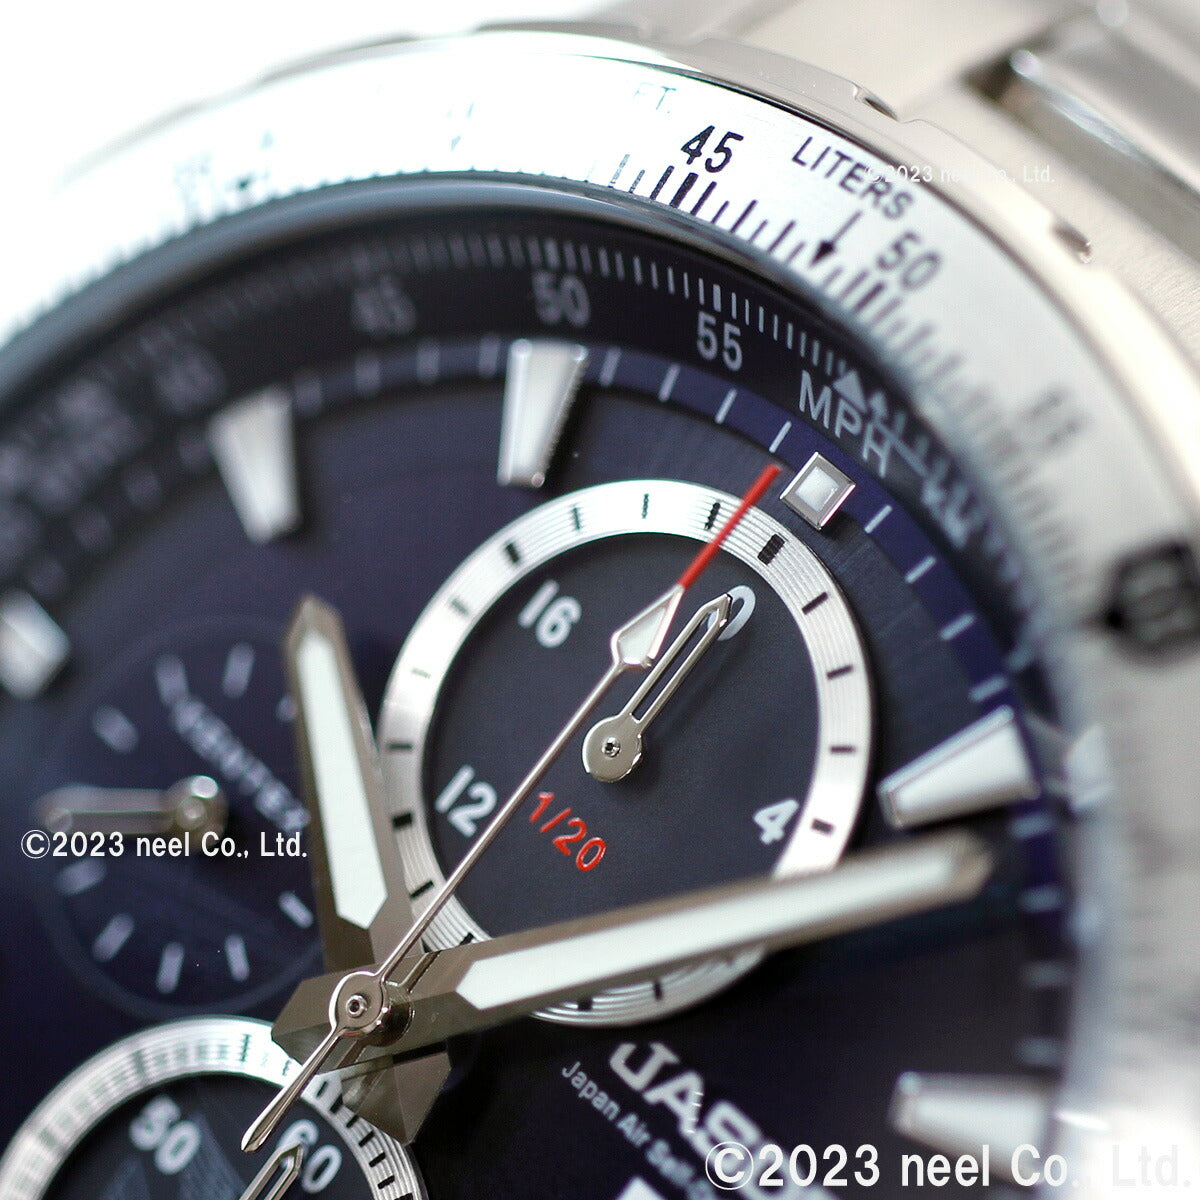 ケンテックス KENTEX ソーラー 腕時計 時計 メンズ JASDF 航空自衛隊 ソーラープロ JSDF SOLAR Pro クロノグラフ 日本製 S802M-1